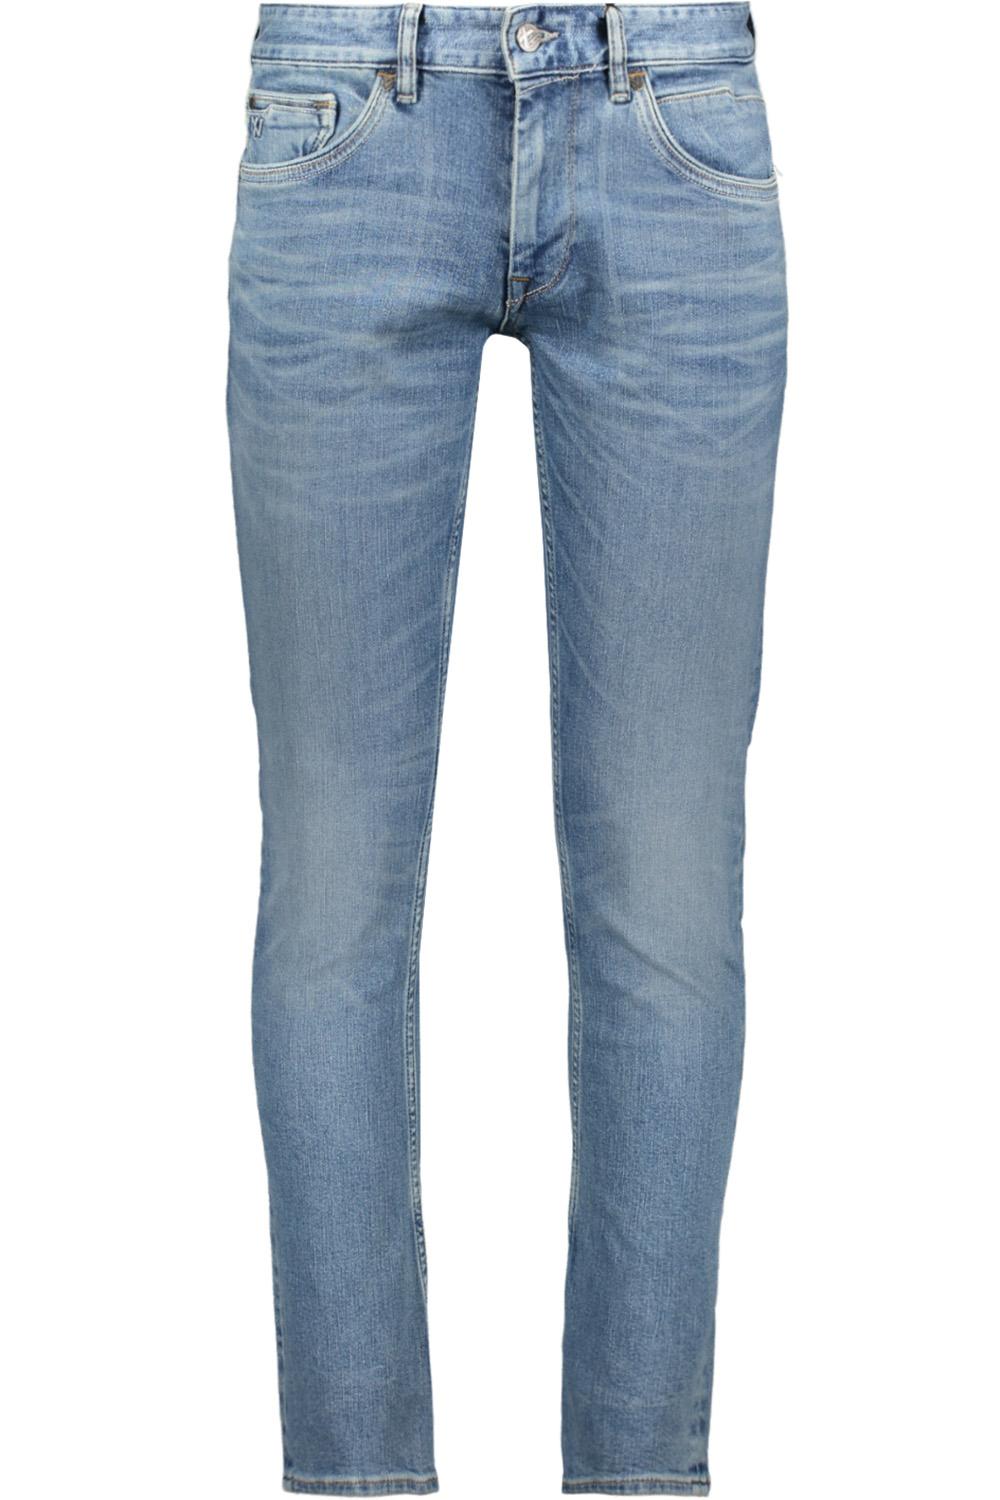 Denken rekken vallei xv jeans ptr150 pme legend jeans lmd